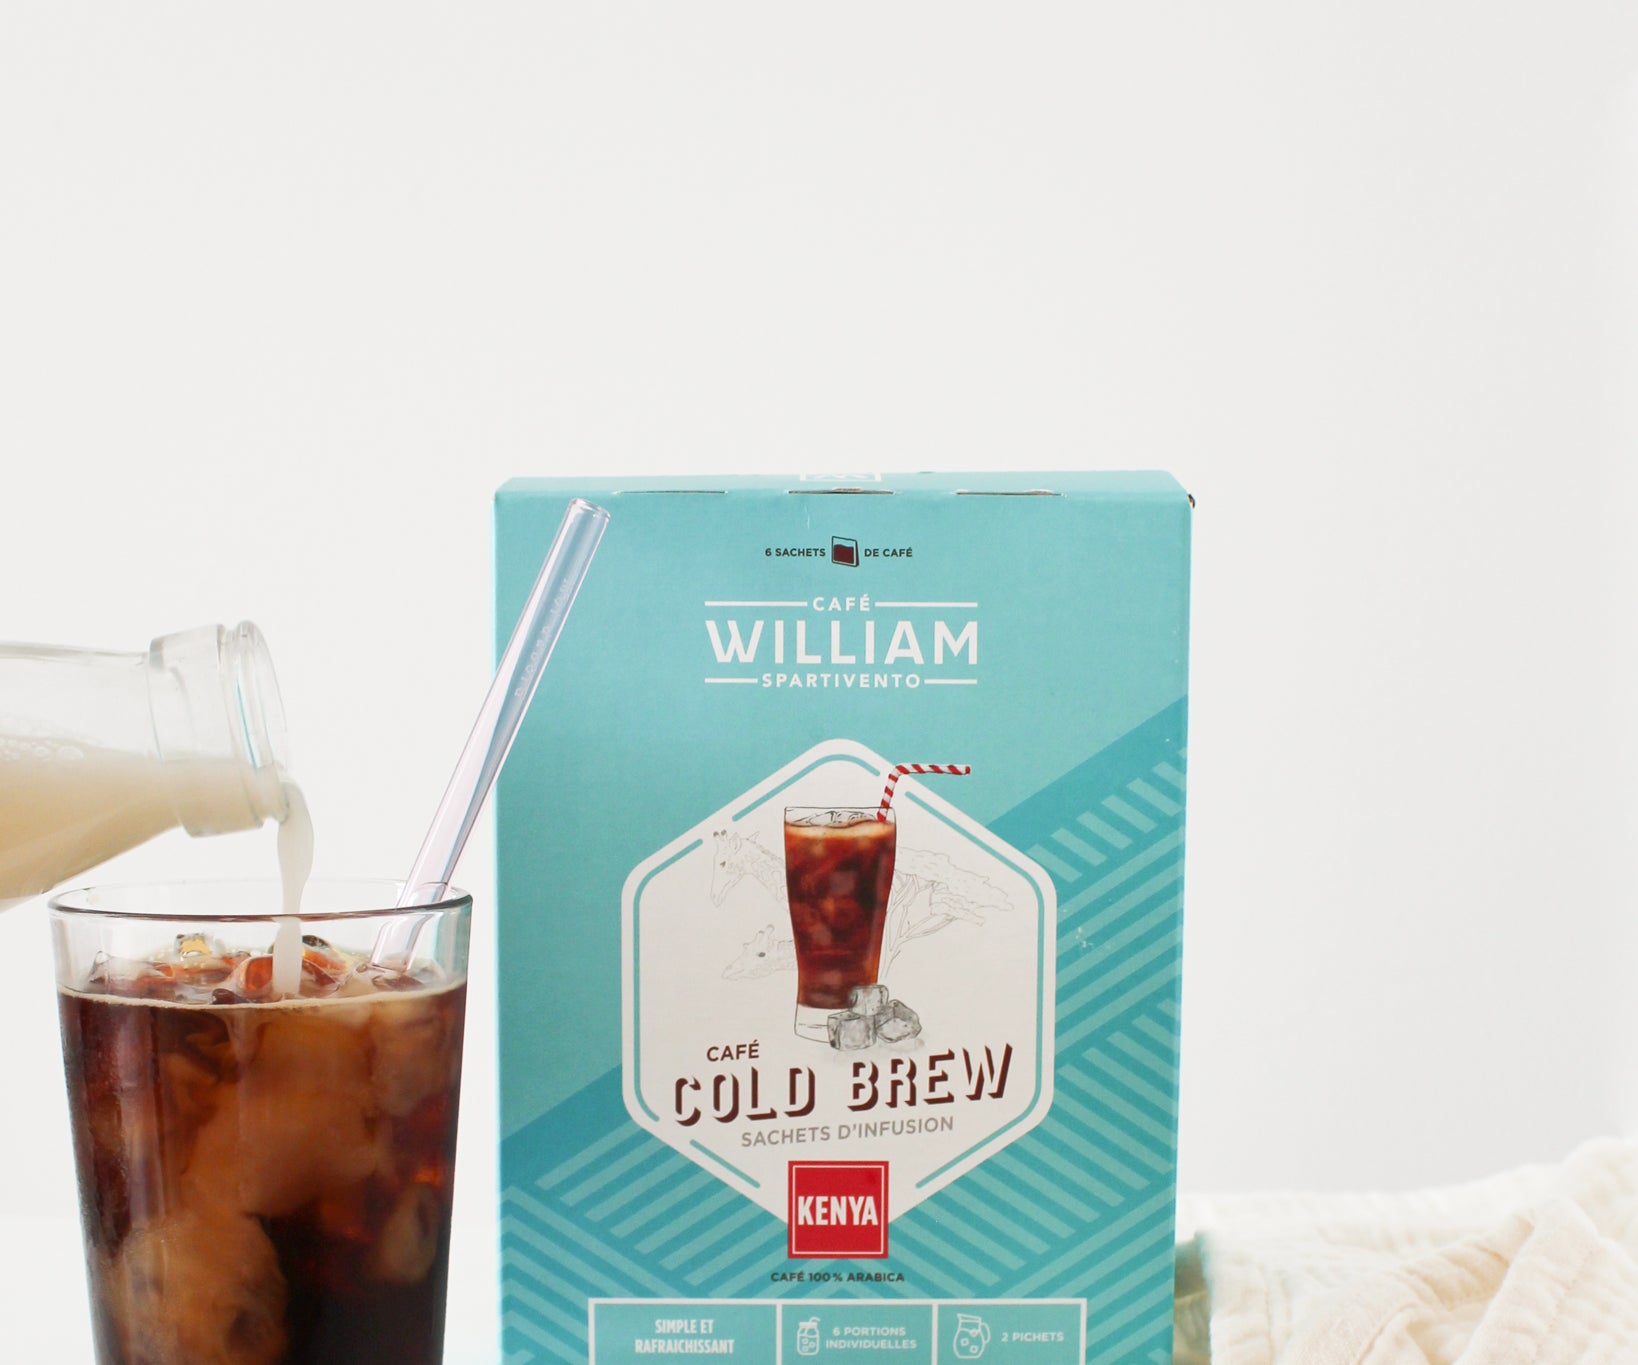 Café cold brew - Café William